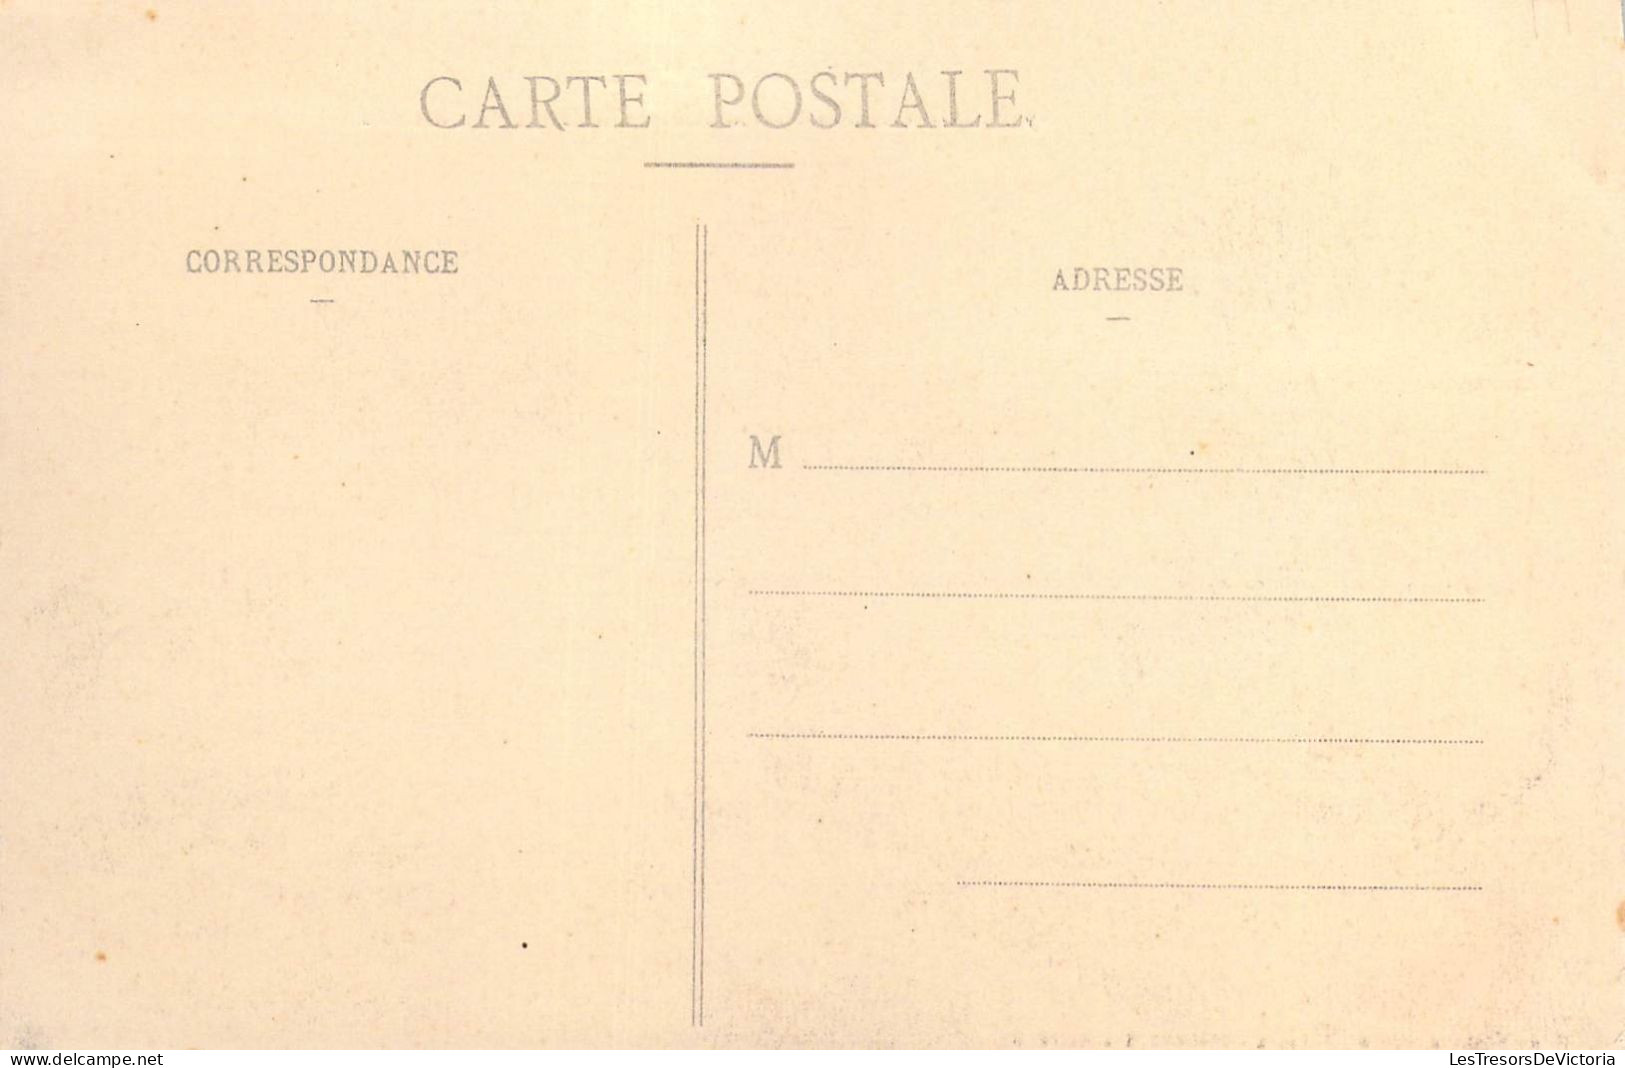 FRANCE - Nouvelles-Hébrides - Plantation De Foreland - Campagne De " Kersaint " - Carte Postale Ancienne - Polynésie Française